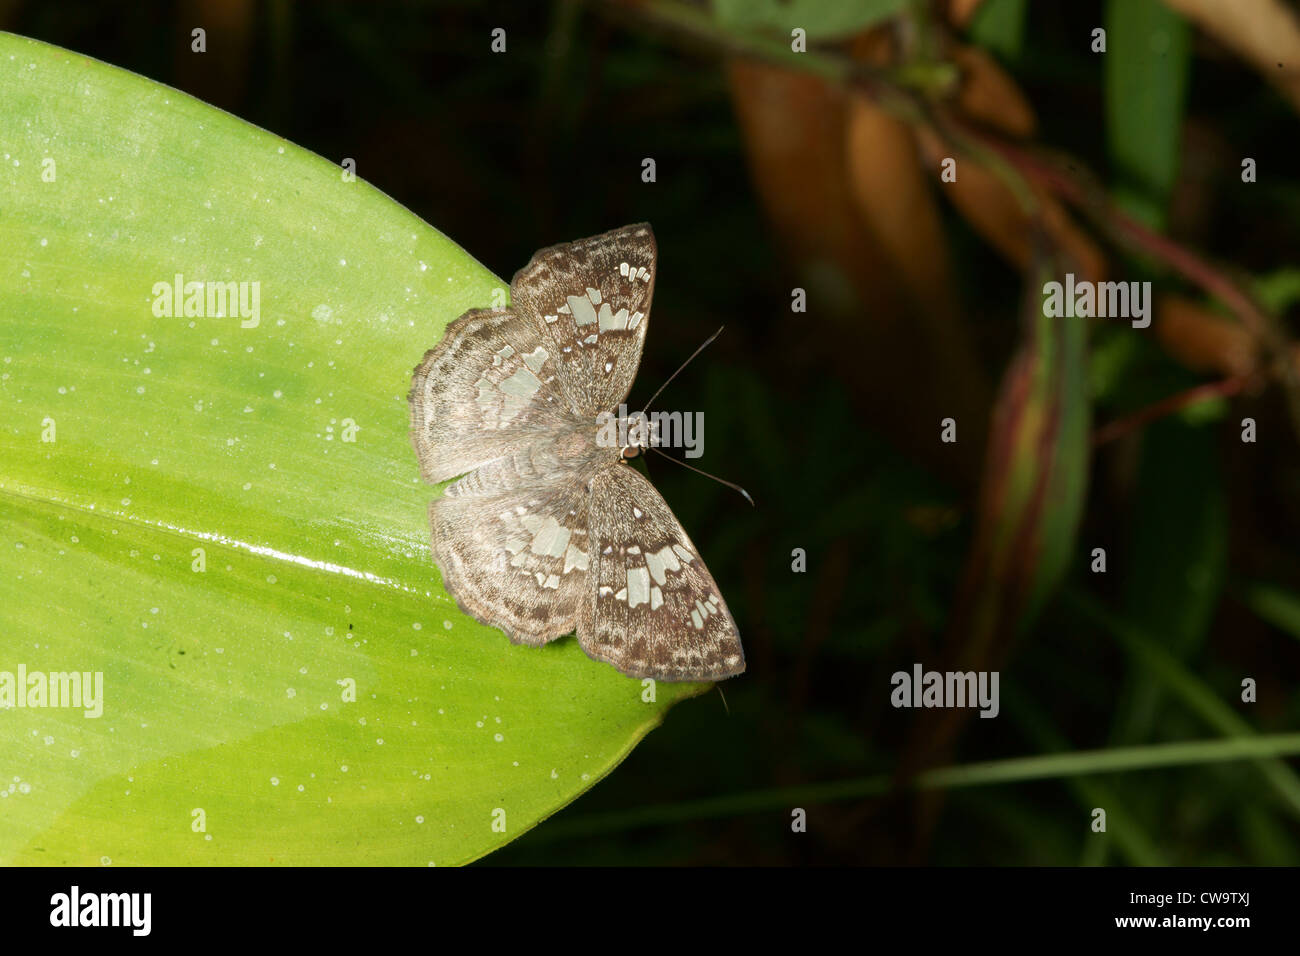 speckled mottled moth on plant leaf Stock Photo